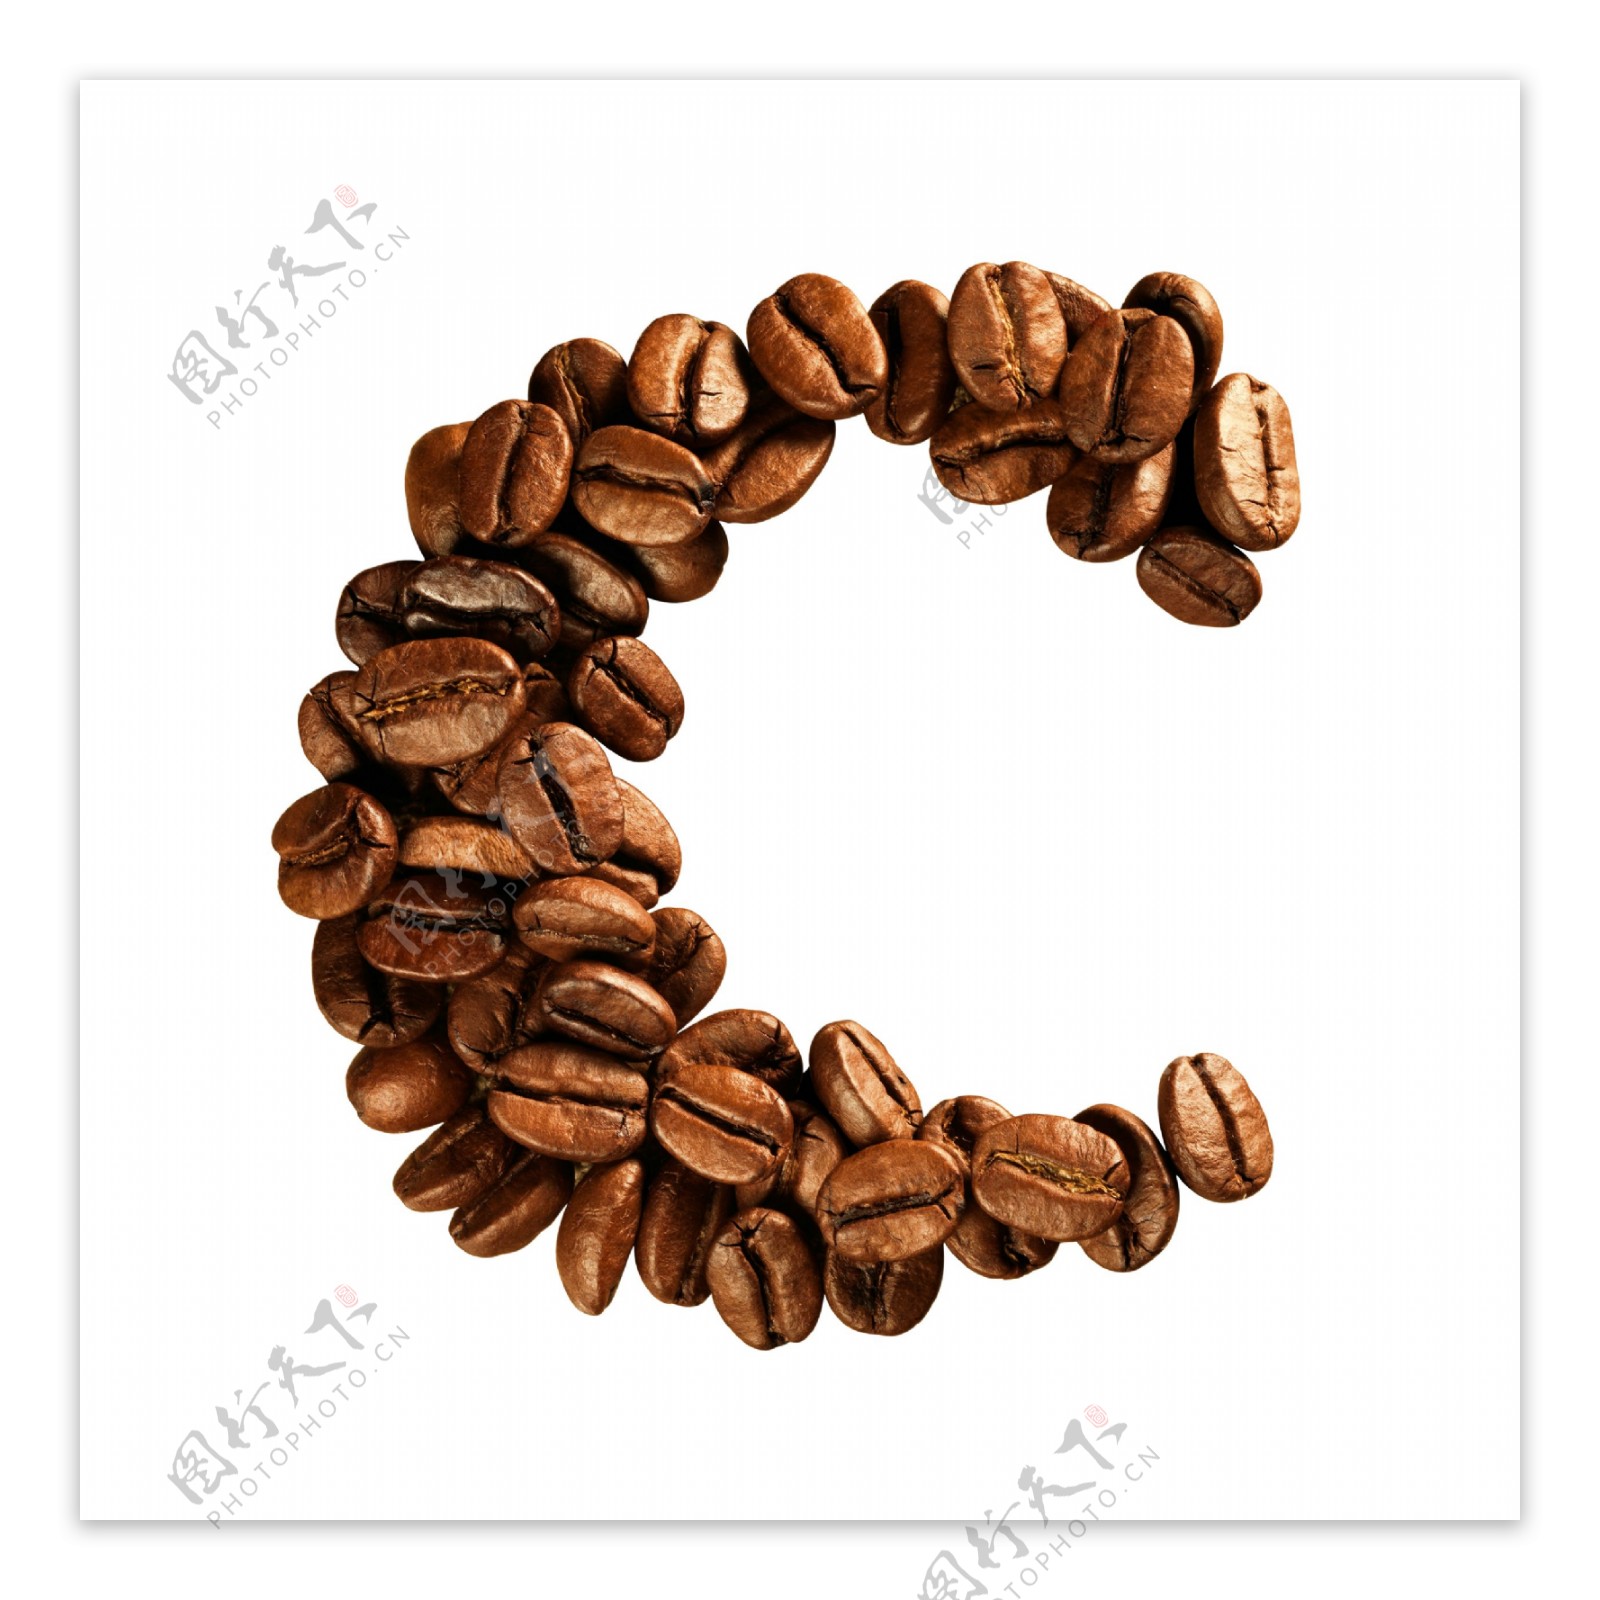 咖啡豆组成的字母C图片